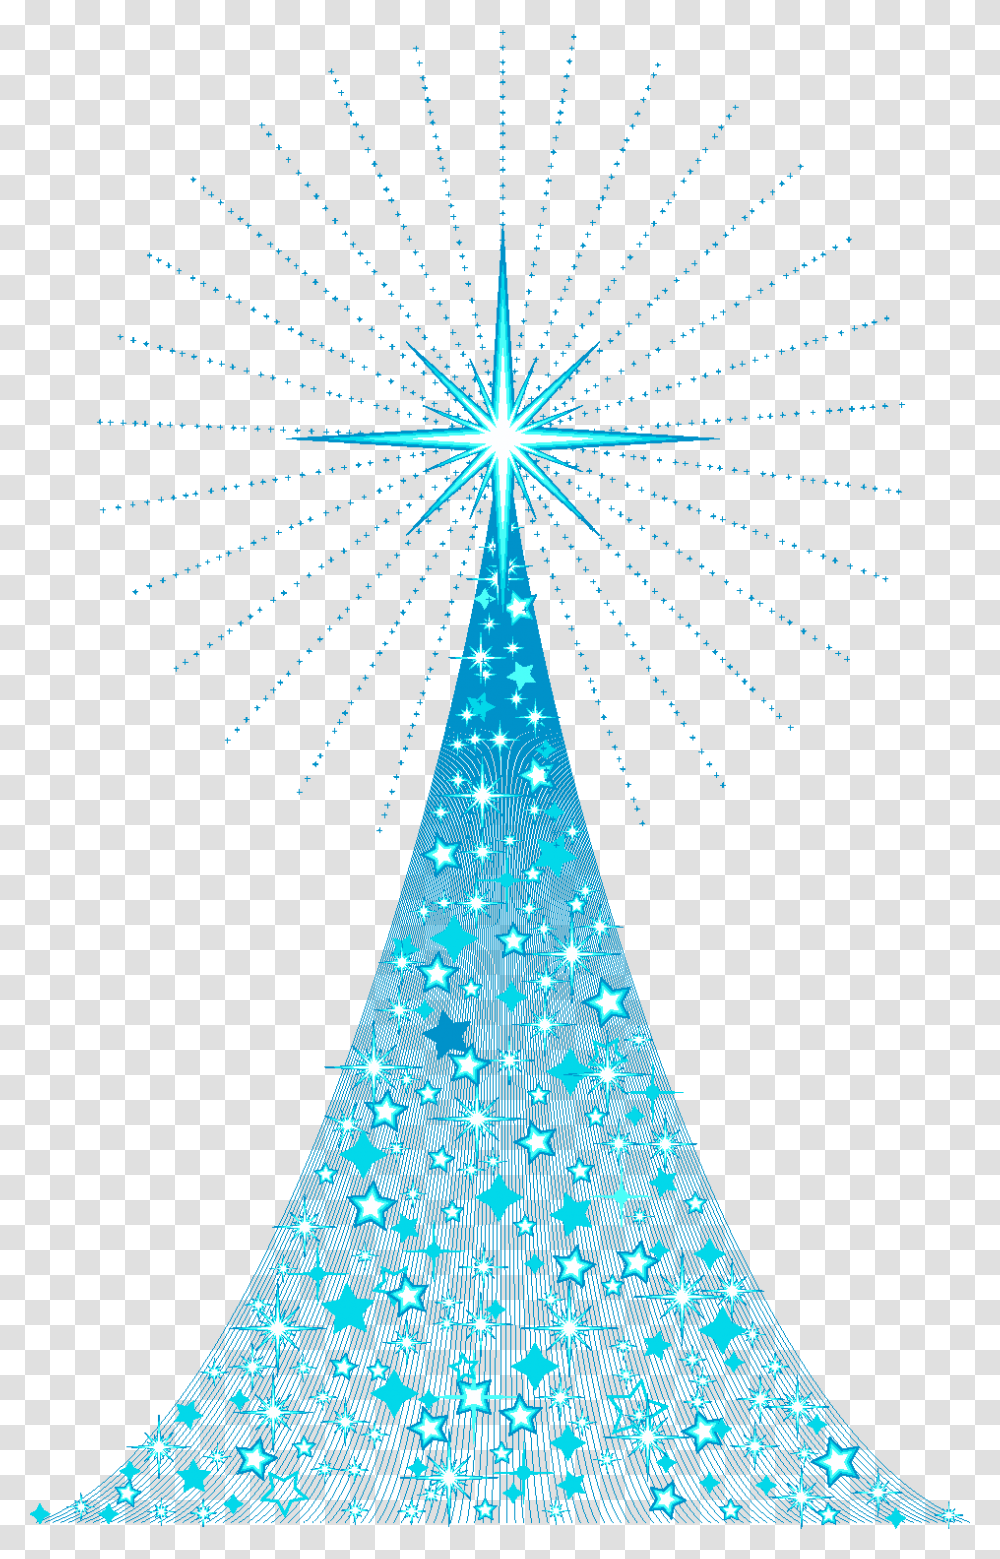 Rbol De Navidad Arbol De Navidad Azul, Tree, Plant, Ornament, Lighting Transparent Png